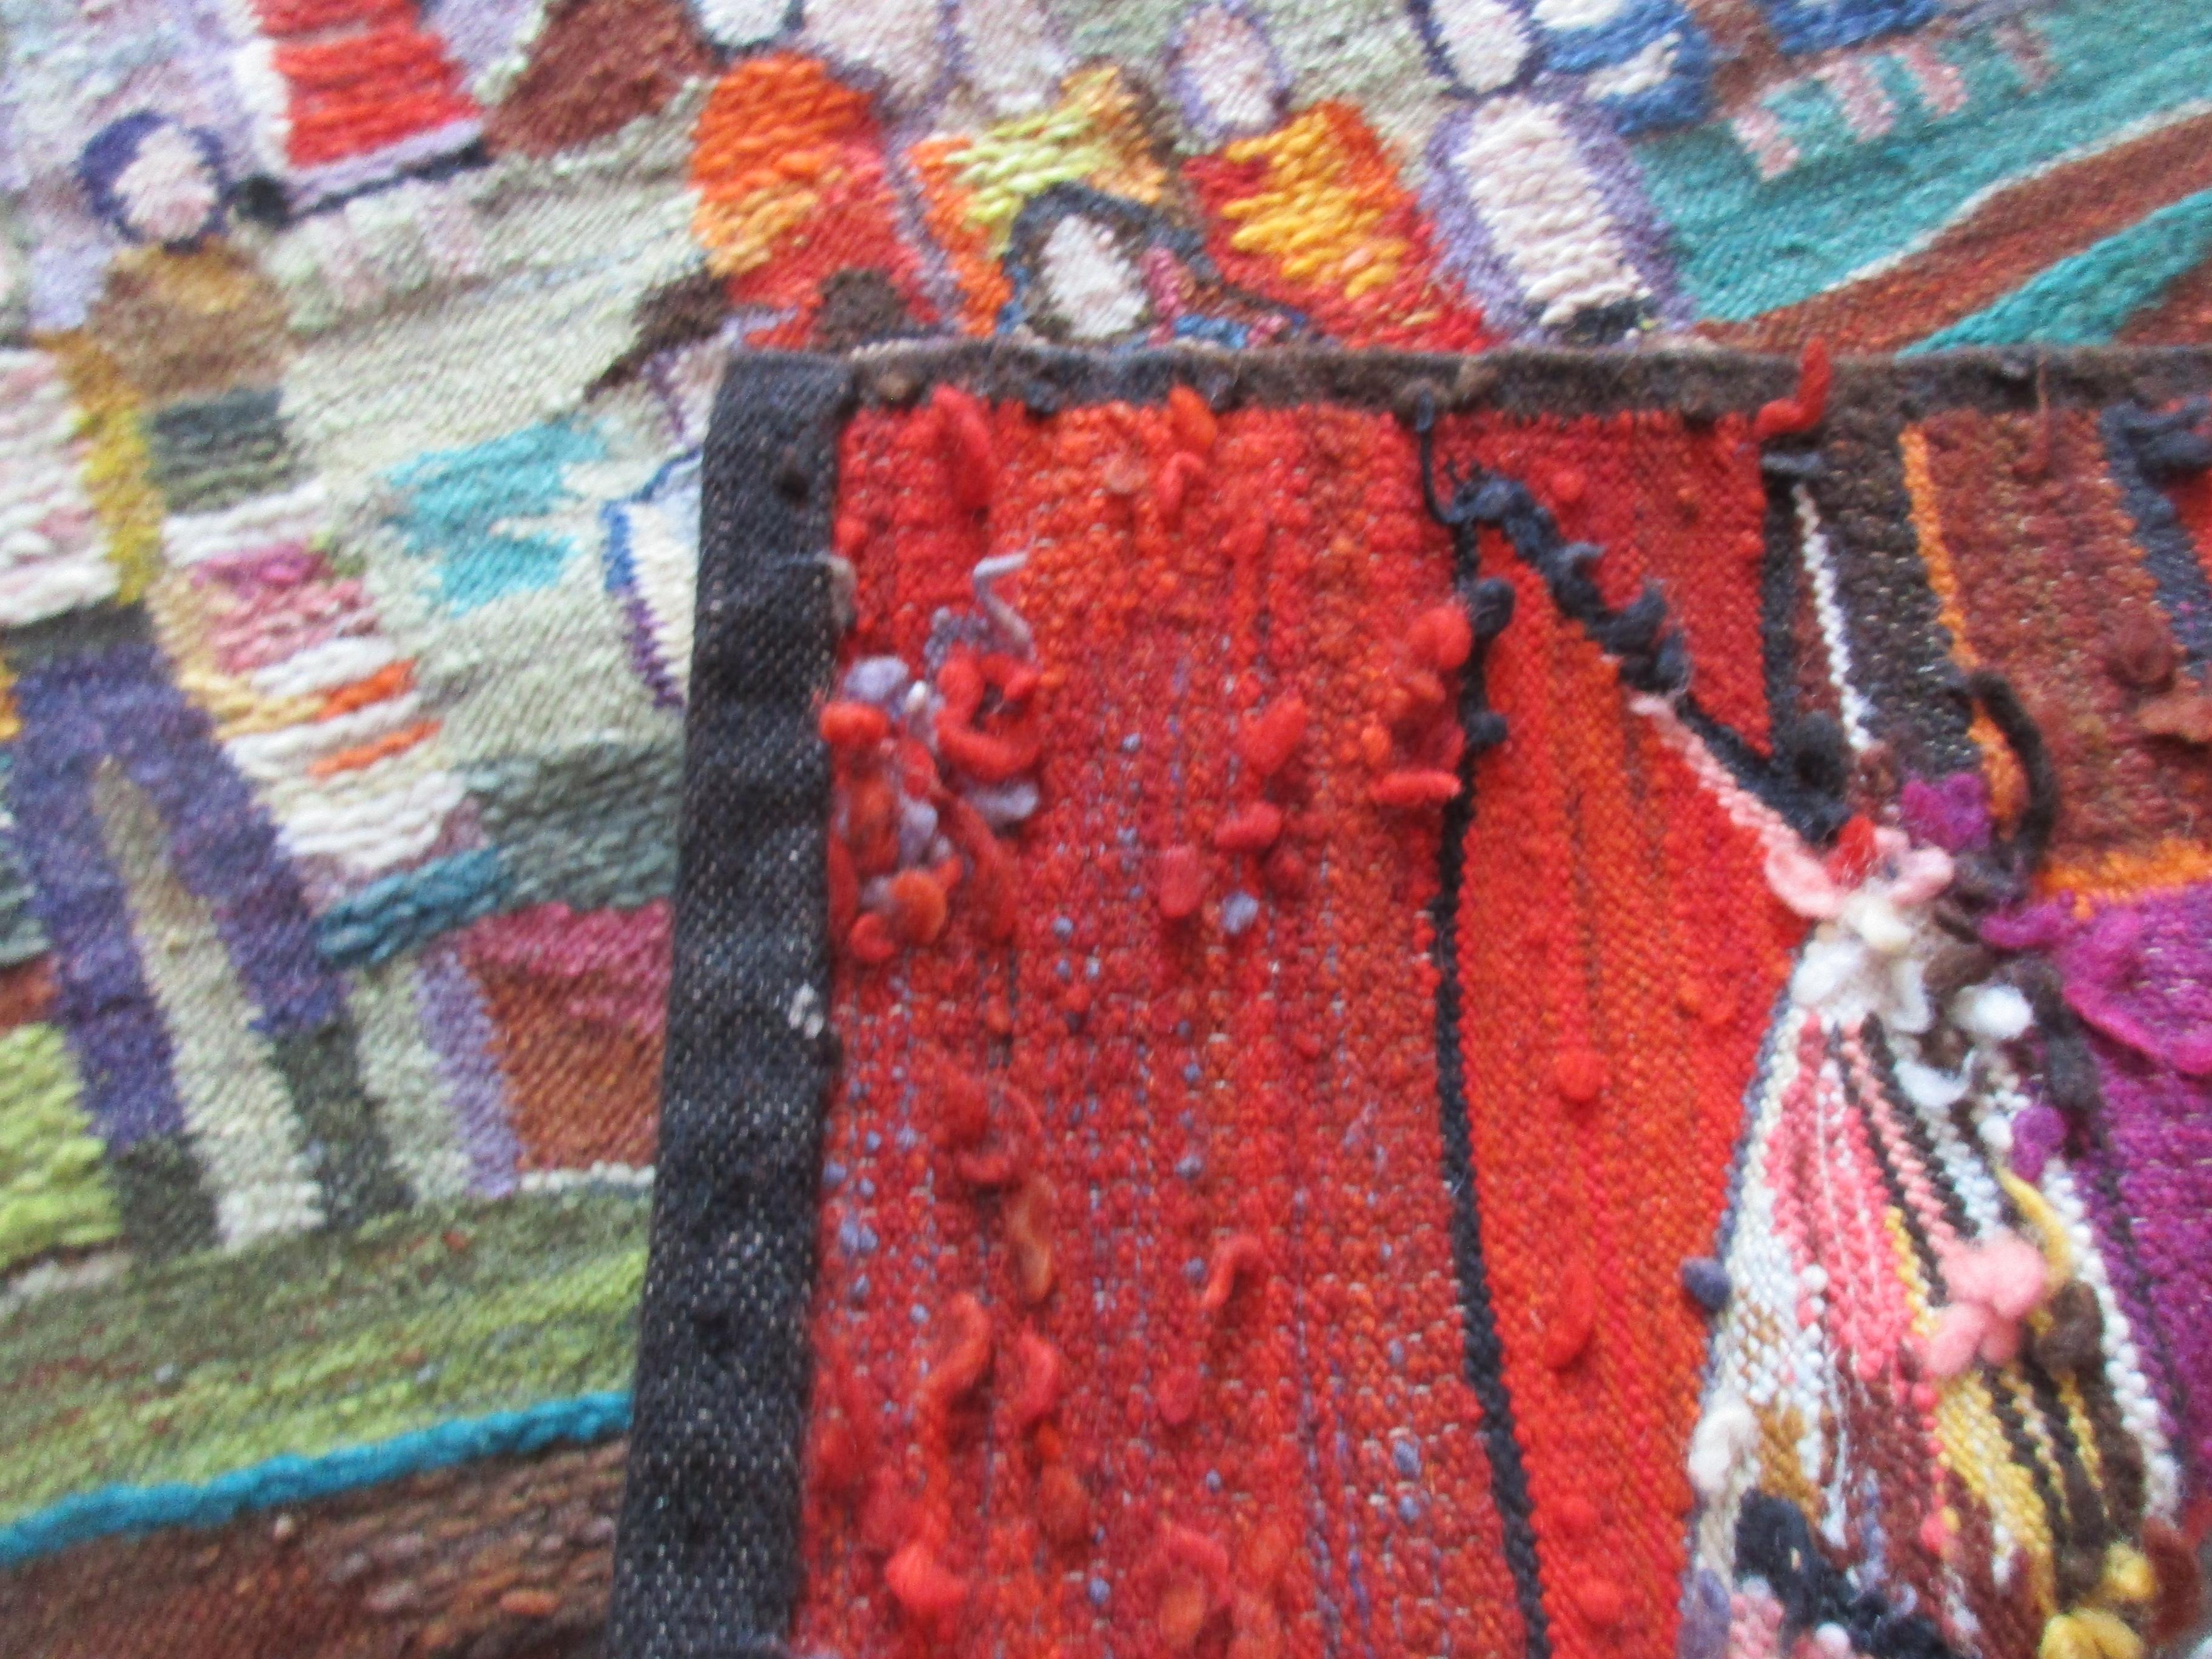 Vintage Handgewebter Wandteppich aus Wolle, entworfen vom polnischen Künstler Piotr Grabowski 
und handgewebt von Szczakiel Elfryda und in den 1980er Jahren von Cepelia vertrieben. Cepelia war eine polnische Stiftung für Kunst und Kunsthandwerk, die